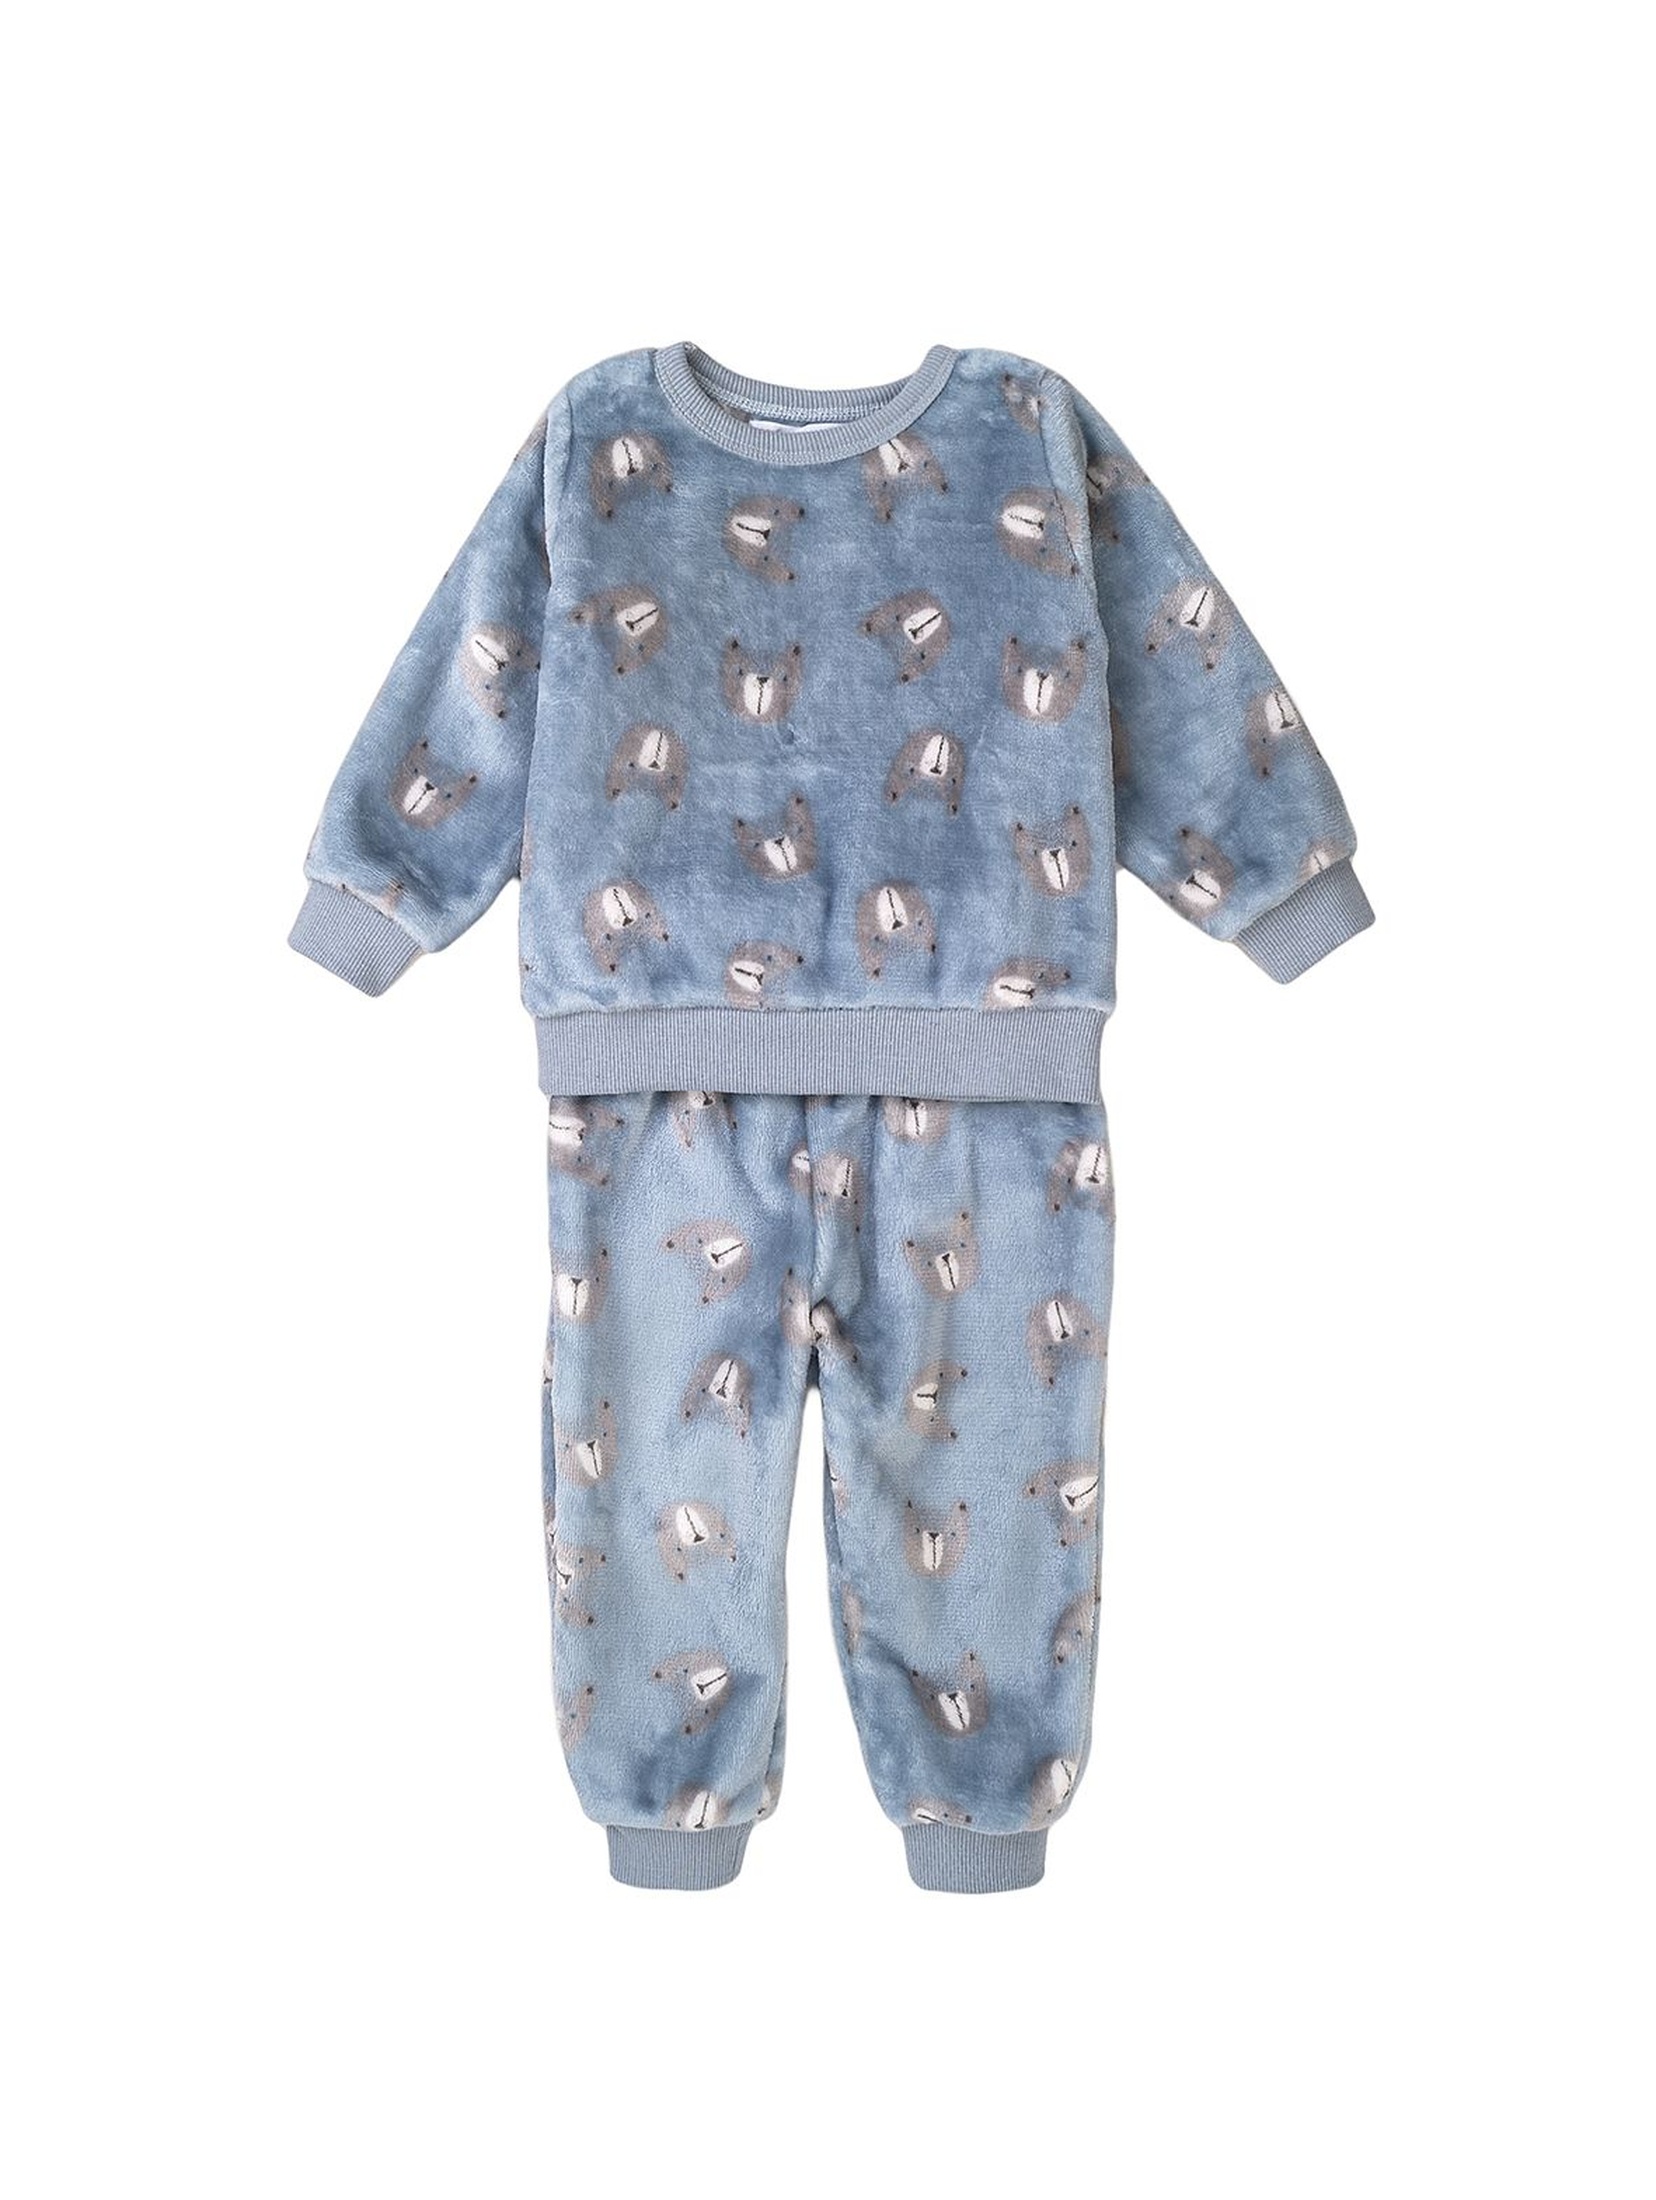 Piżama niemowlęca dwuczęściowa niebieska w misie